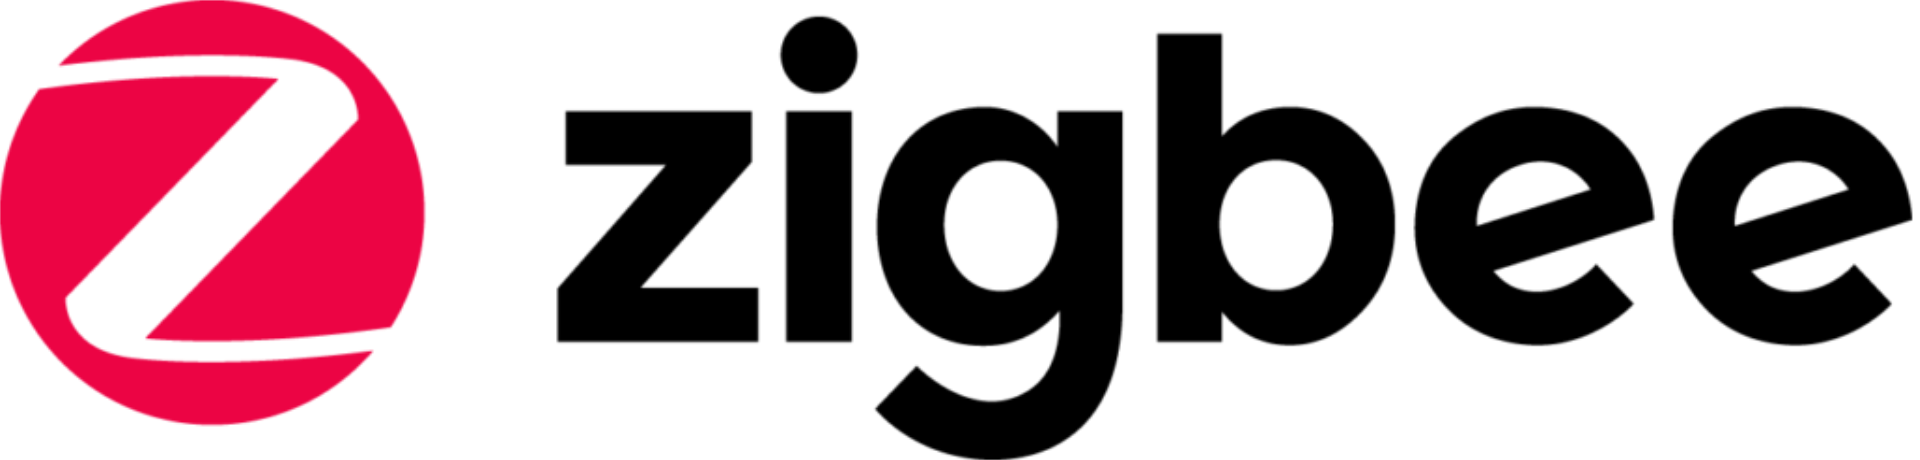 Zigbee_logo